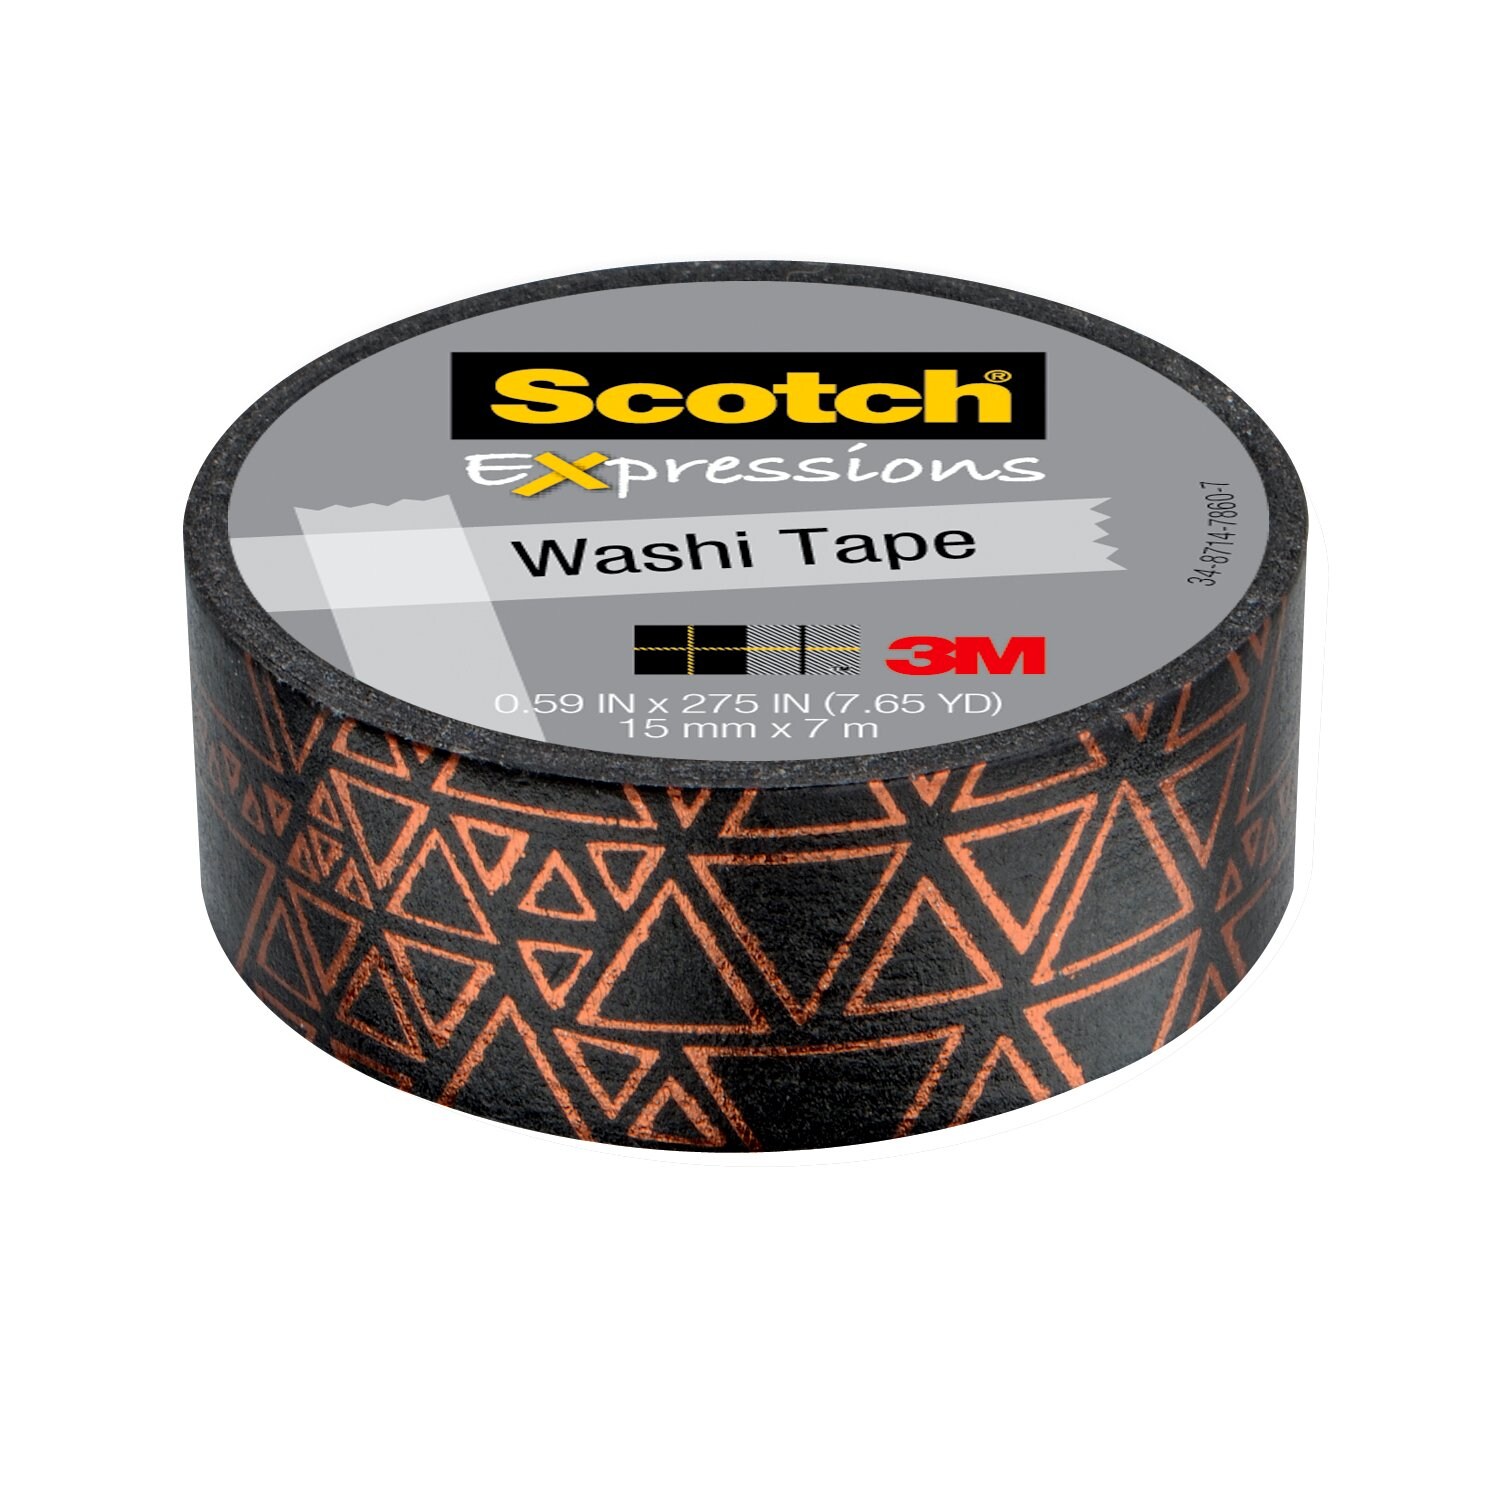 7100096897 - Scotch Expressions Washi Tape C614-P4, .59 in x 275 in (15 mm x 7 m)
Black and Copper Foil Triangles